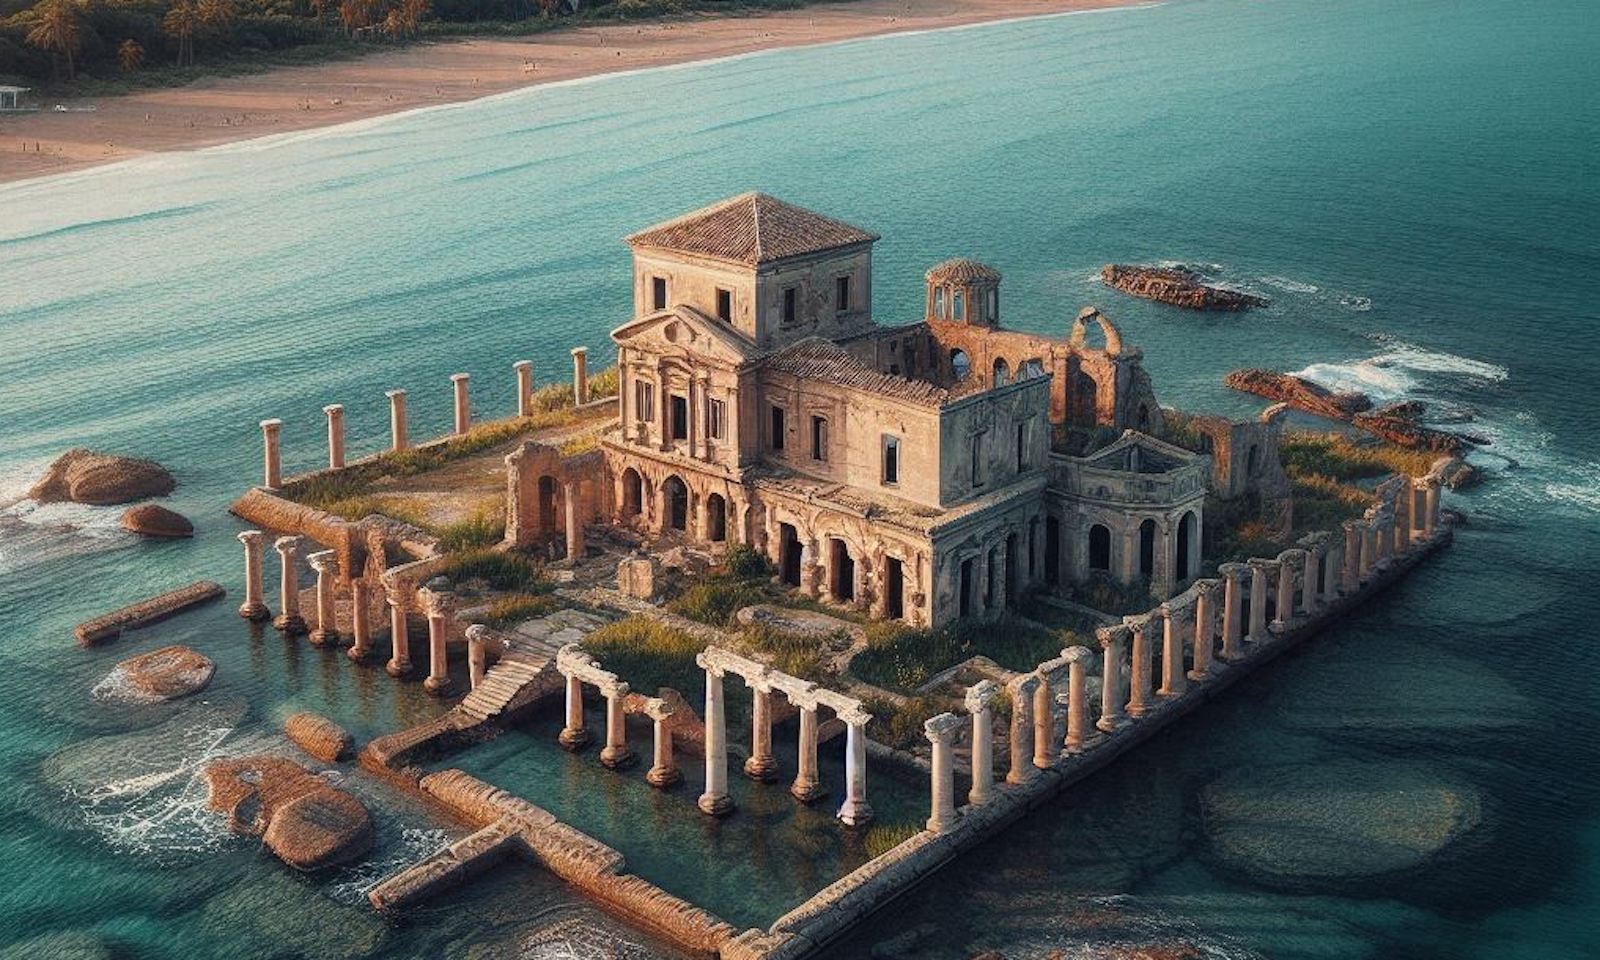 Des archéologues ont découvert les vestiges submergés d'une importante villa datant de l’époque romaine près du littoral de Campo di Mare, au sud de l'Italie. © Futura, Image générée avec Bing Image Creator